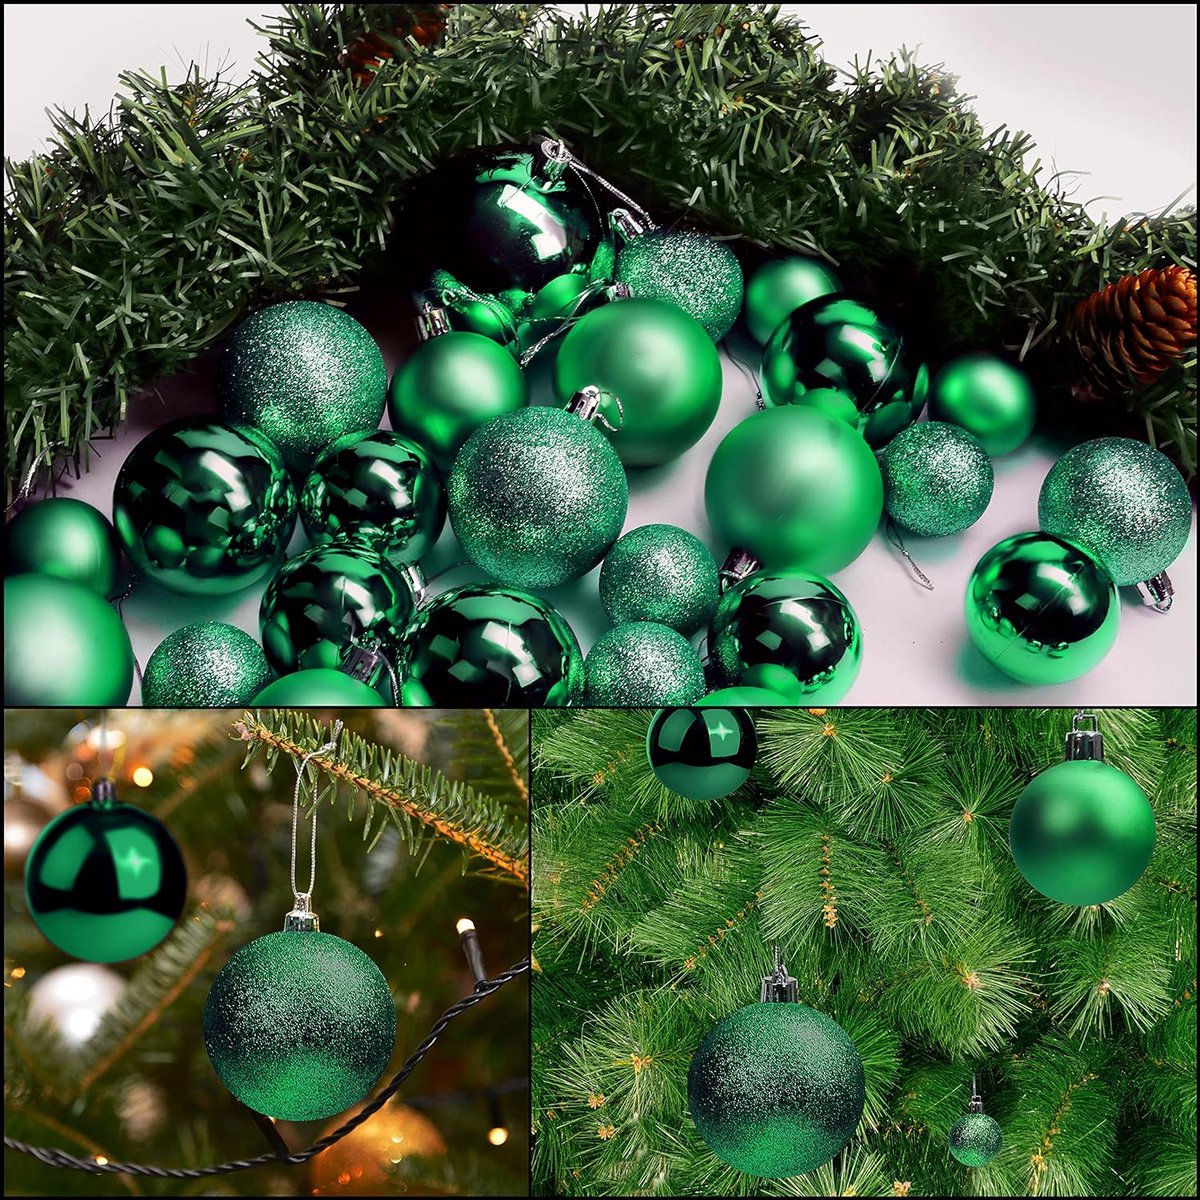 50 stuks groene kerstballen met ster - glanzende dennenbal in verschillende maten met 1 ster - kerstboomdecoratie voor kerstfeest, decoratie binnen en buiten